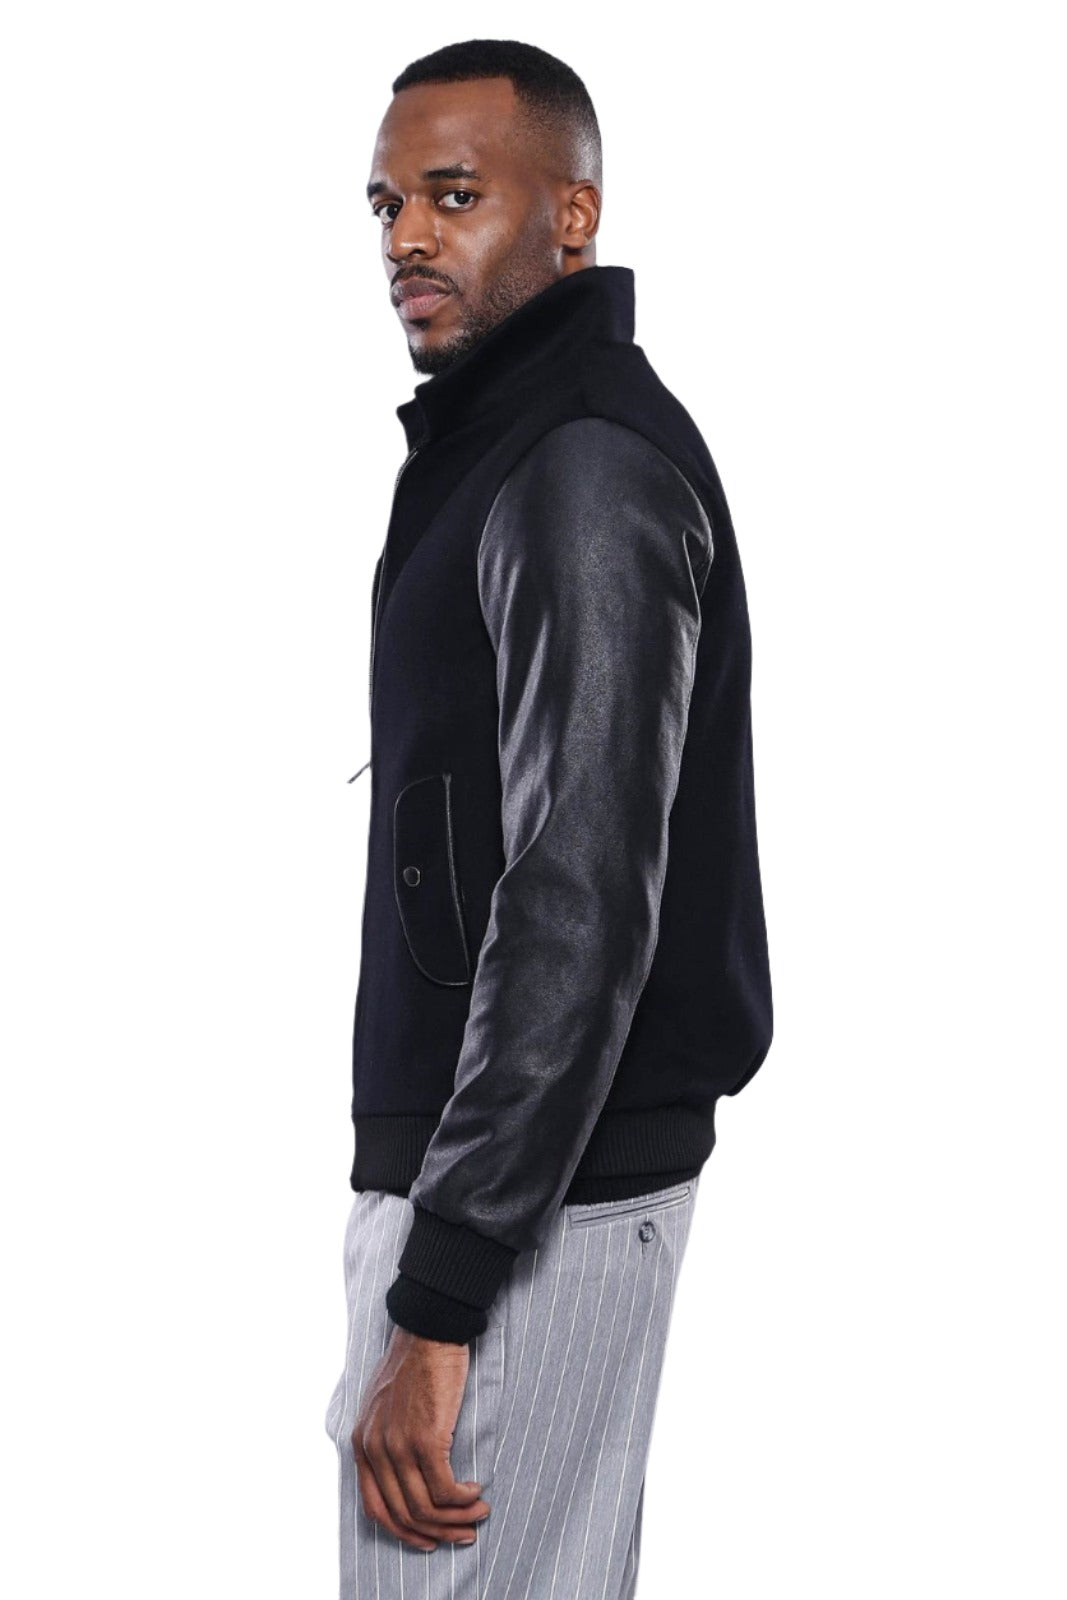 Leather Sleeve Black Cachet Coat | Wessi